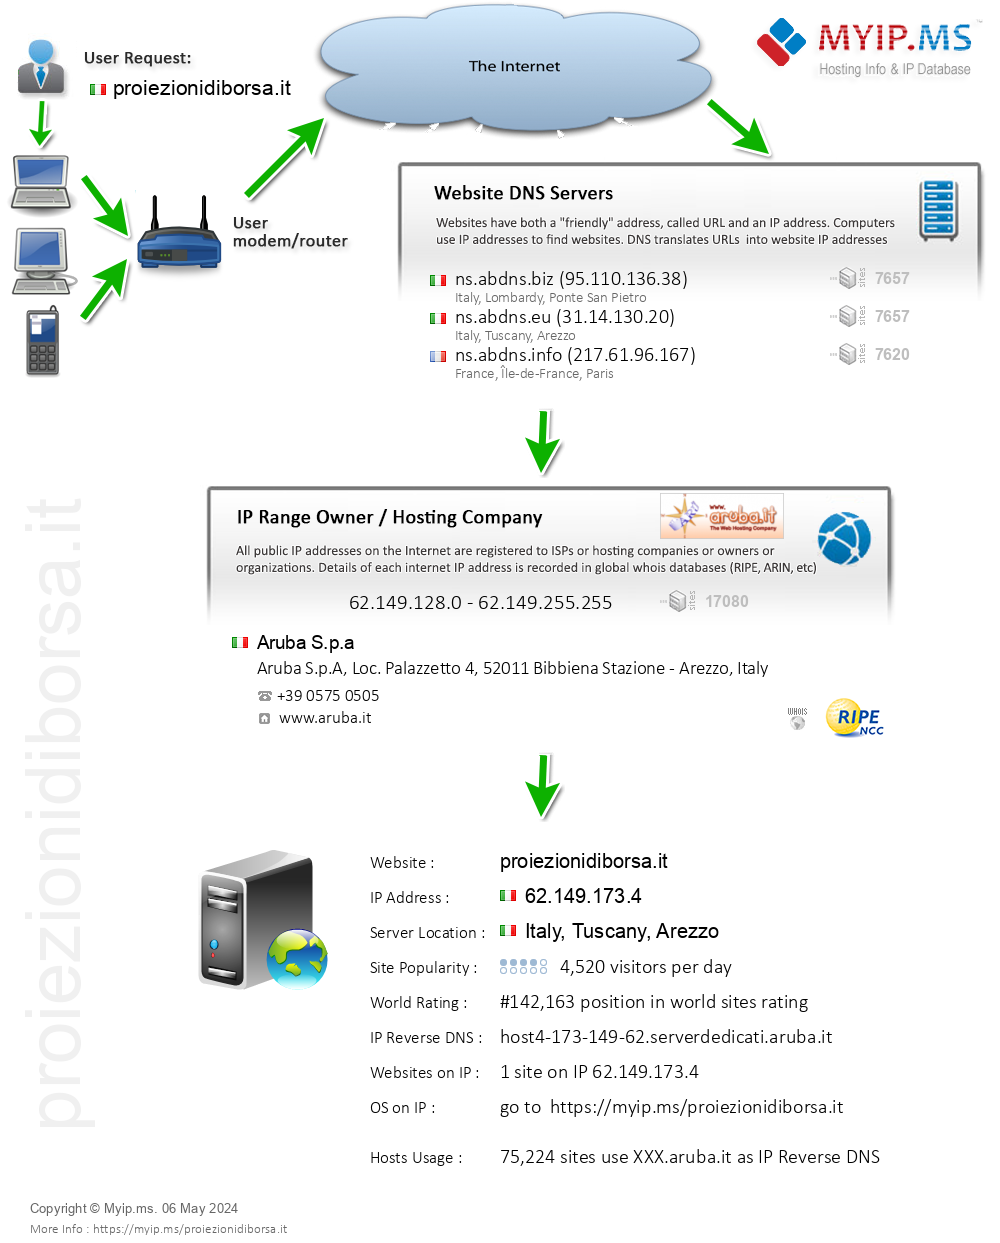 Proiezionidiborsa.it - Website Hosting Visual IP Diagram